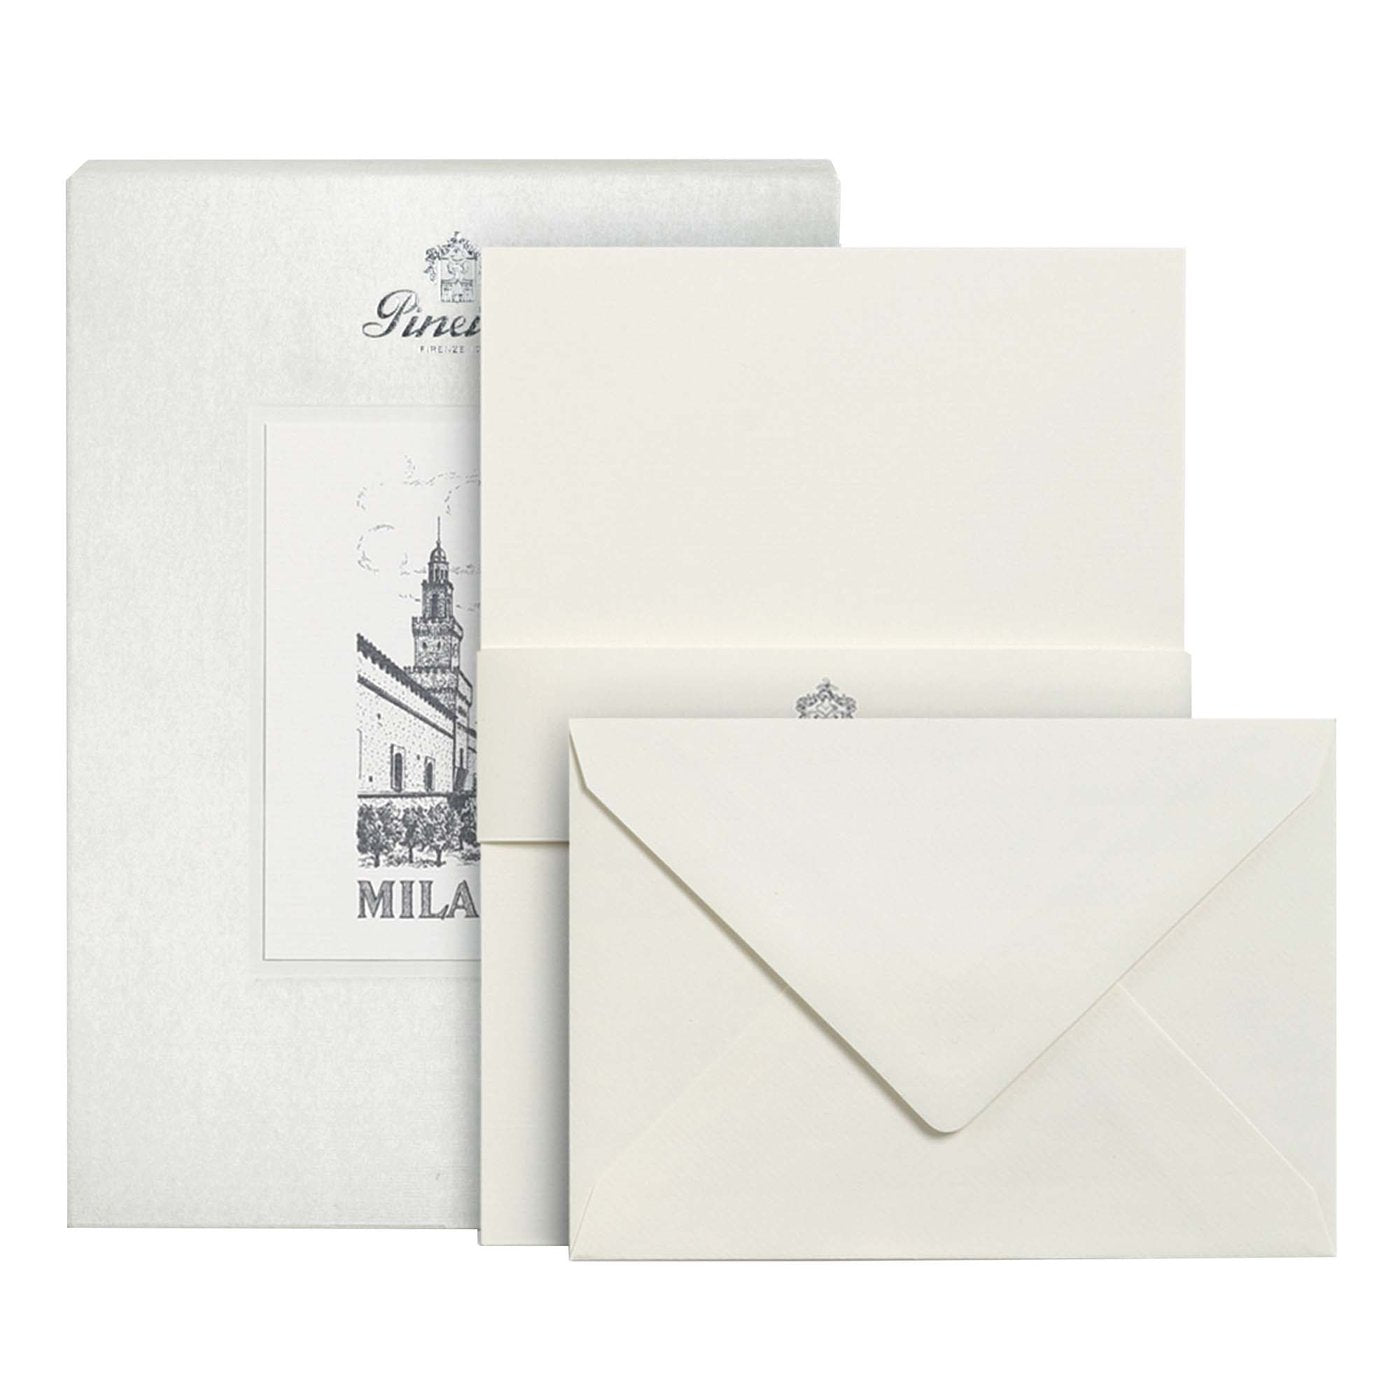 Milano Set of Sheets and Envelopes 210 x 148 mm - Main view